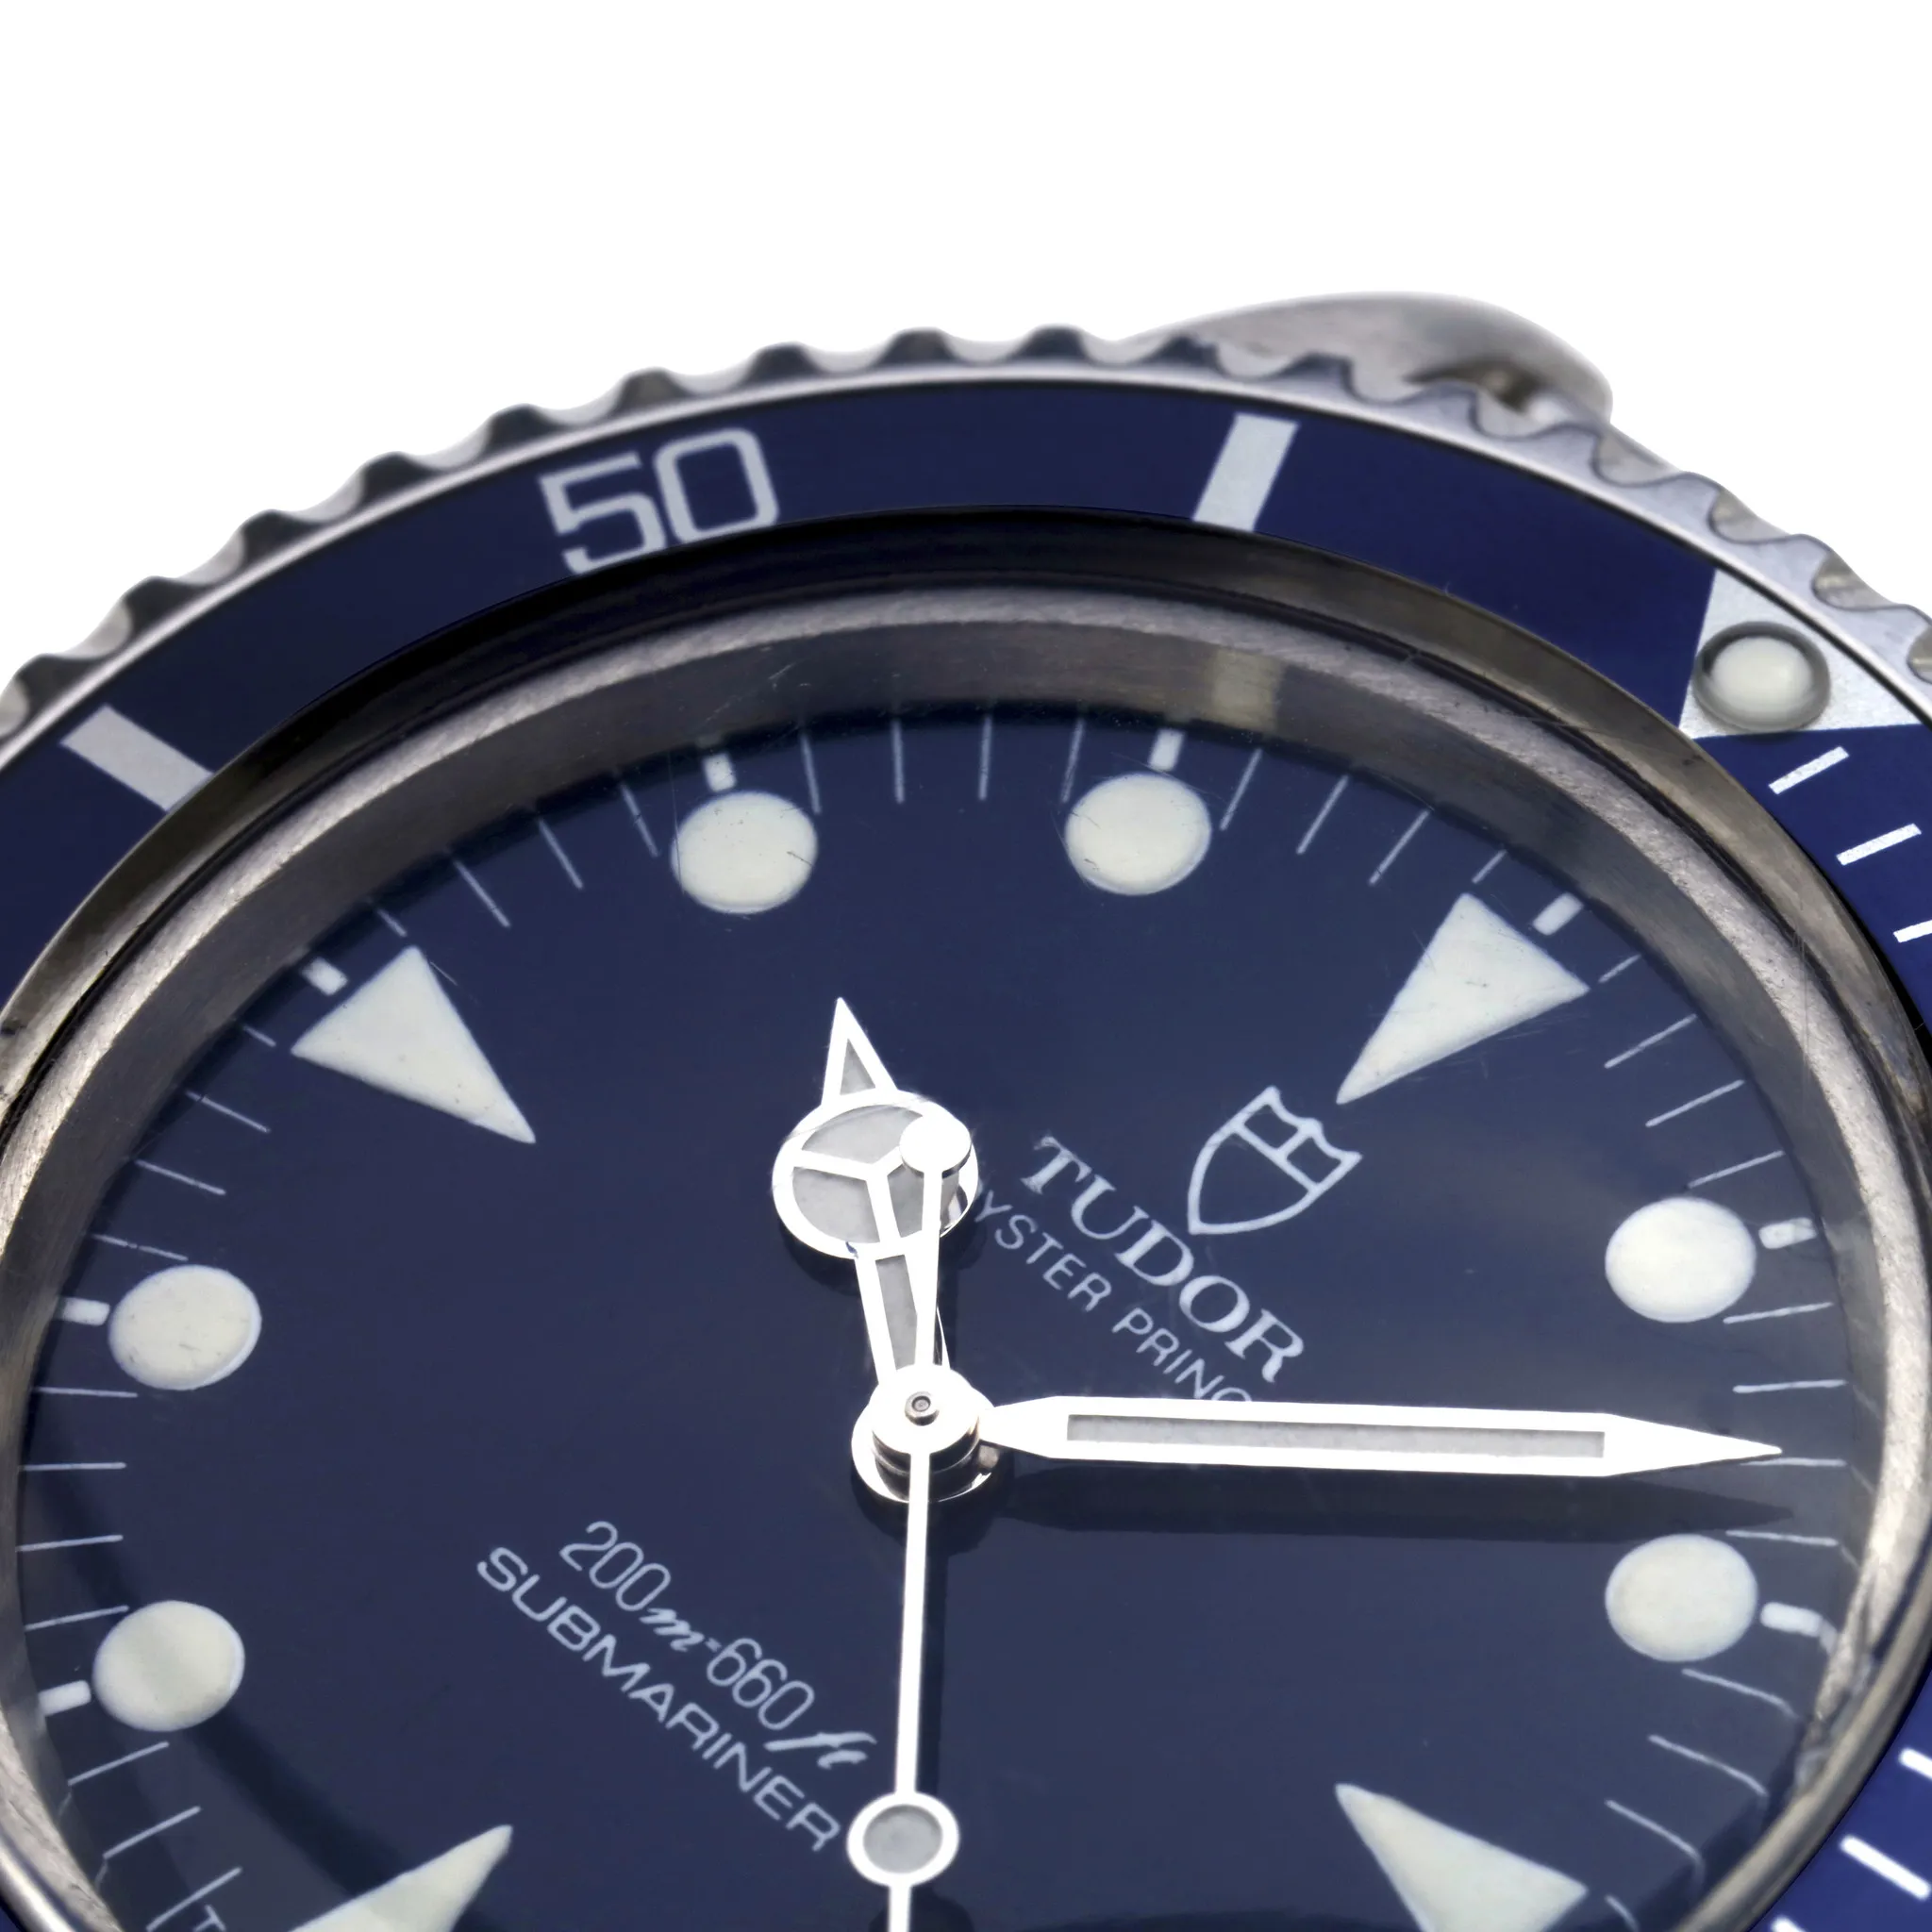 Tudor Submariner 94010 nullmm Stainless steel Blue 5